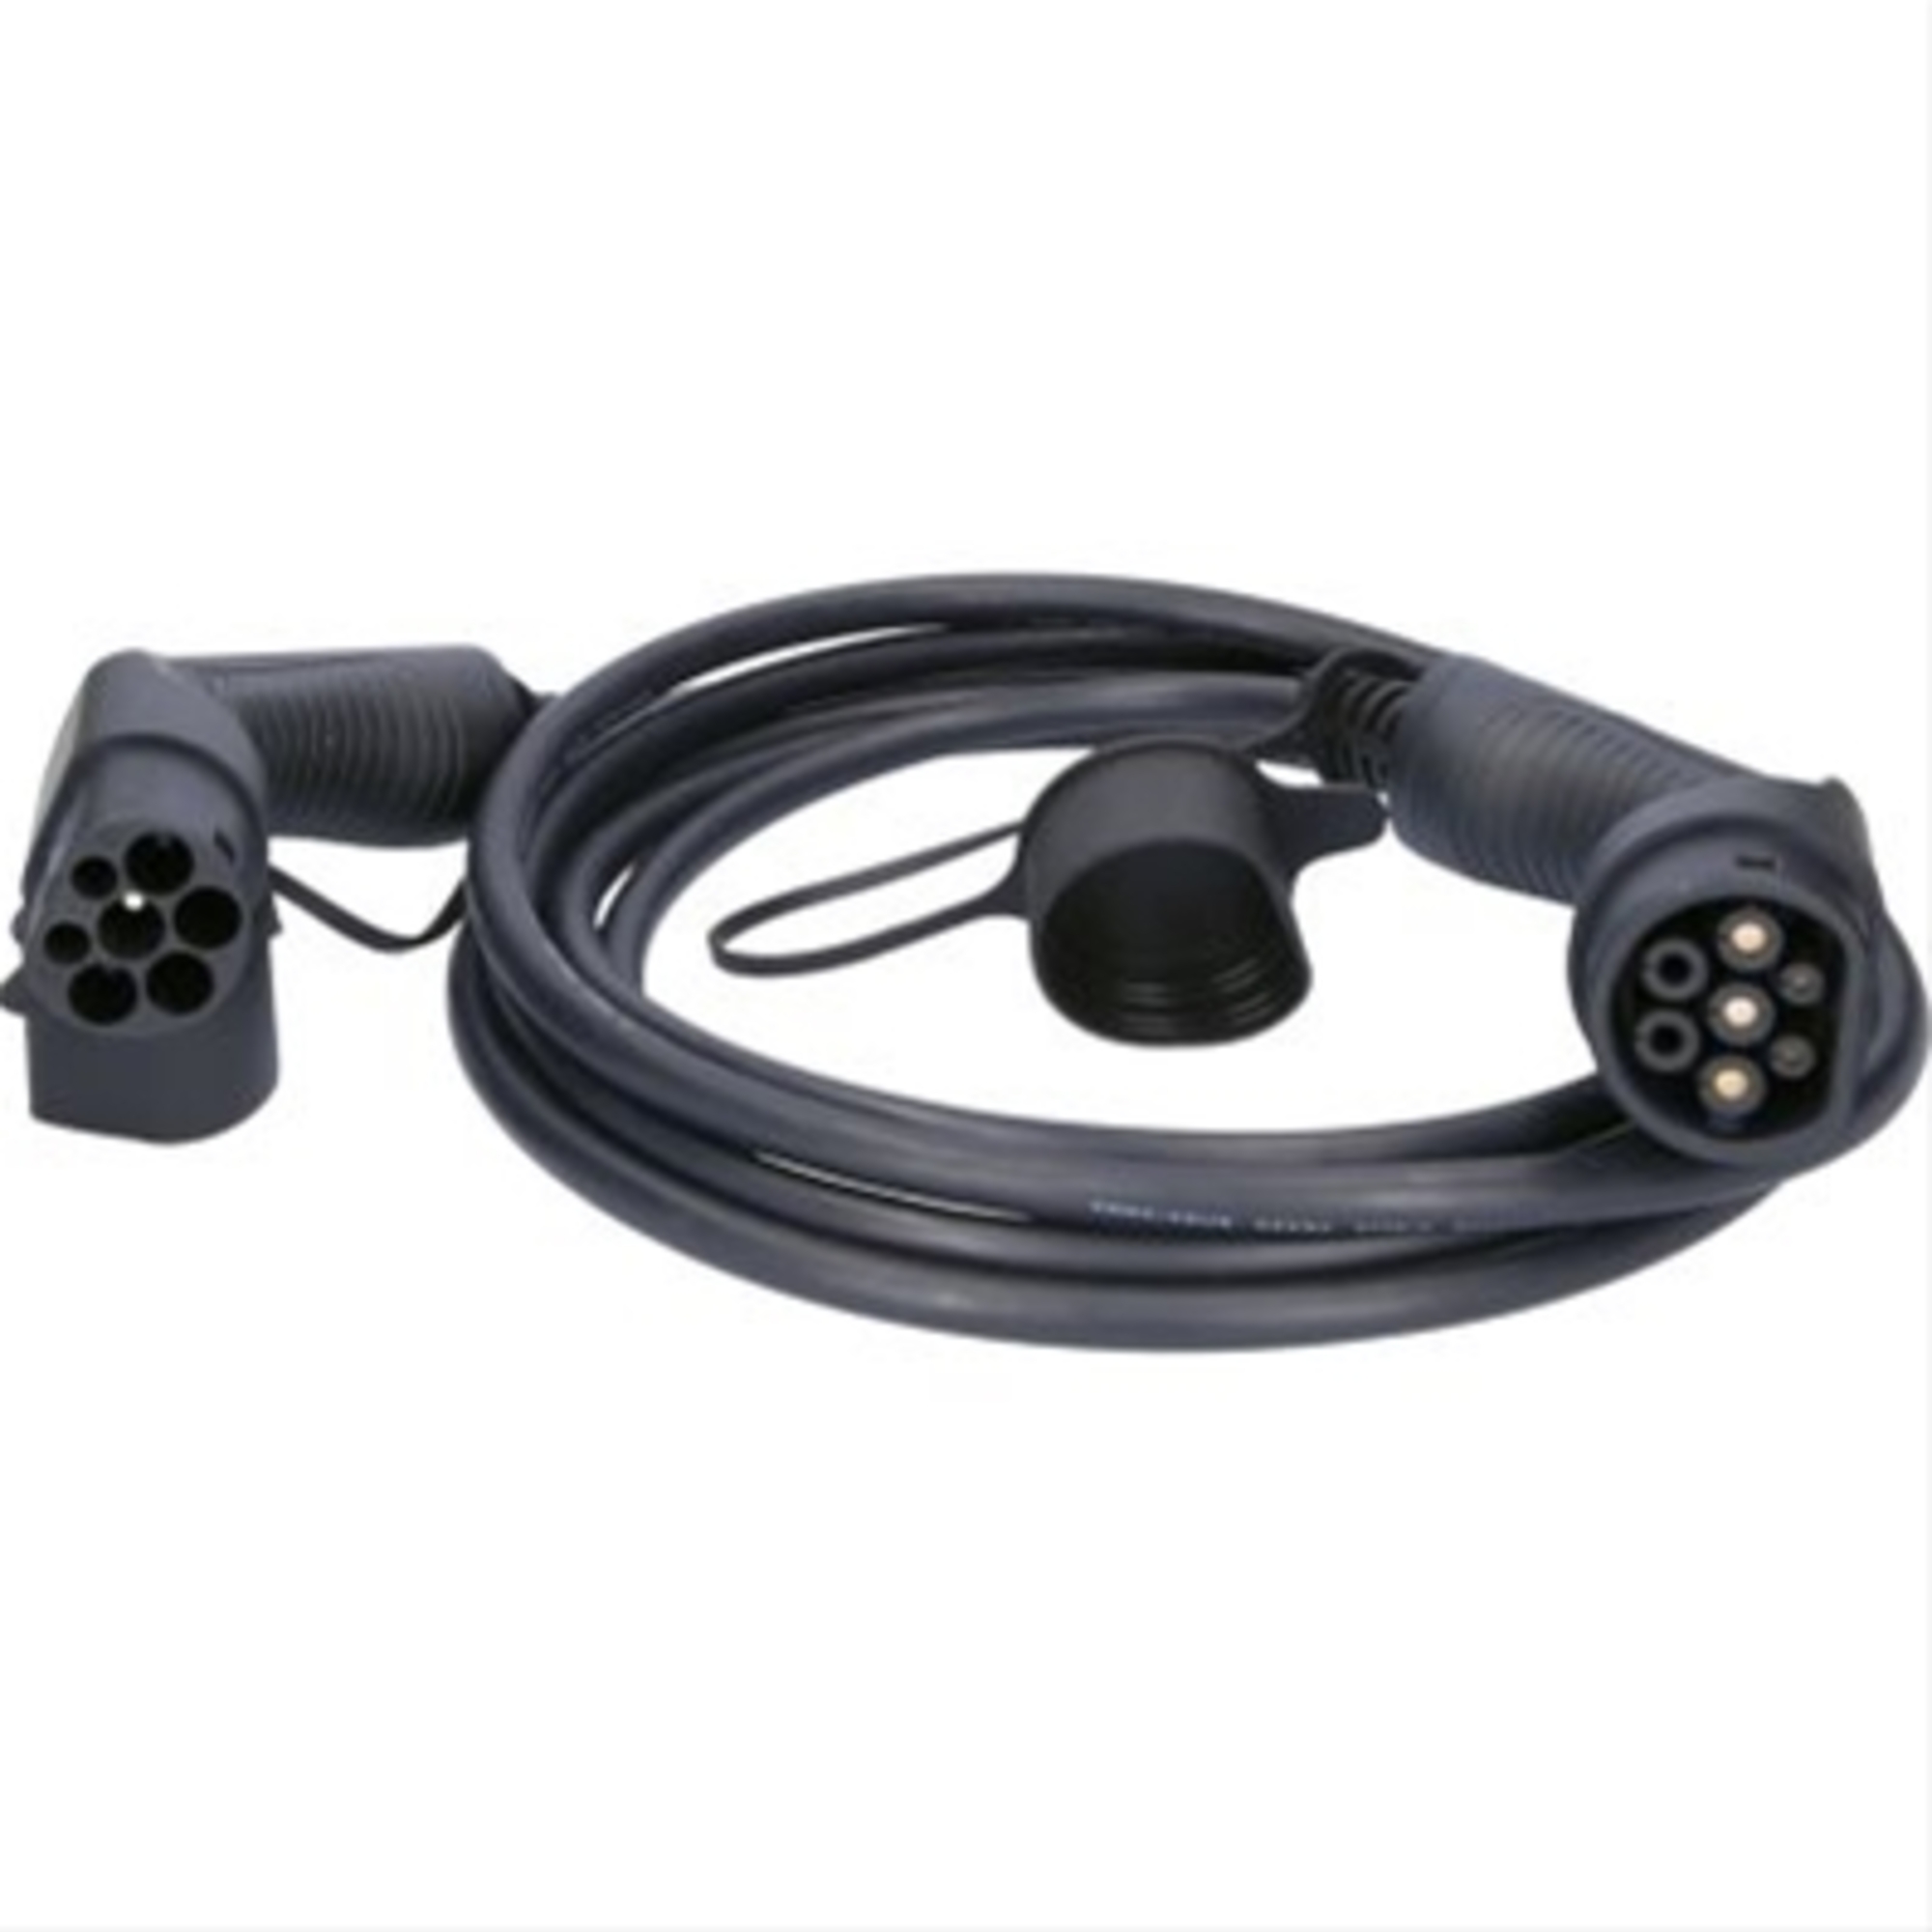 Cablu de incarcare drept typ 2 / typ 2 7.4 kw 230 v 32 a 5m-efuturo ks-tools